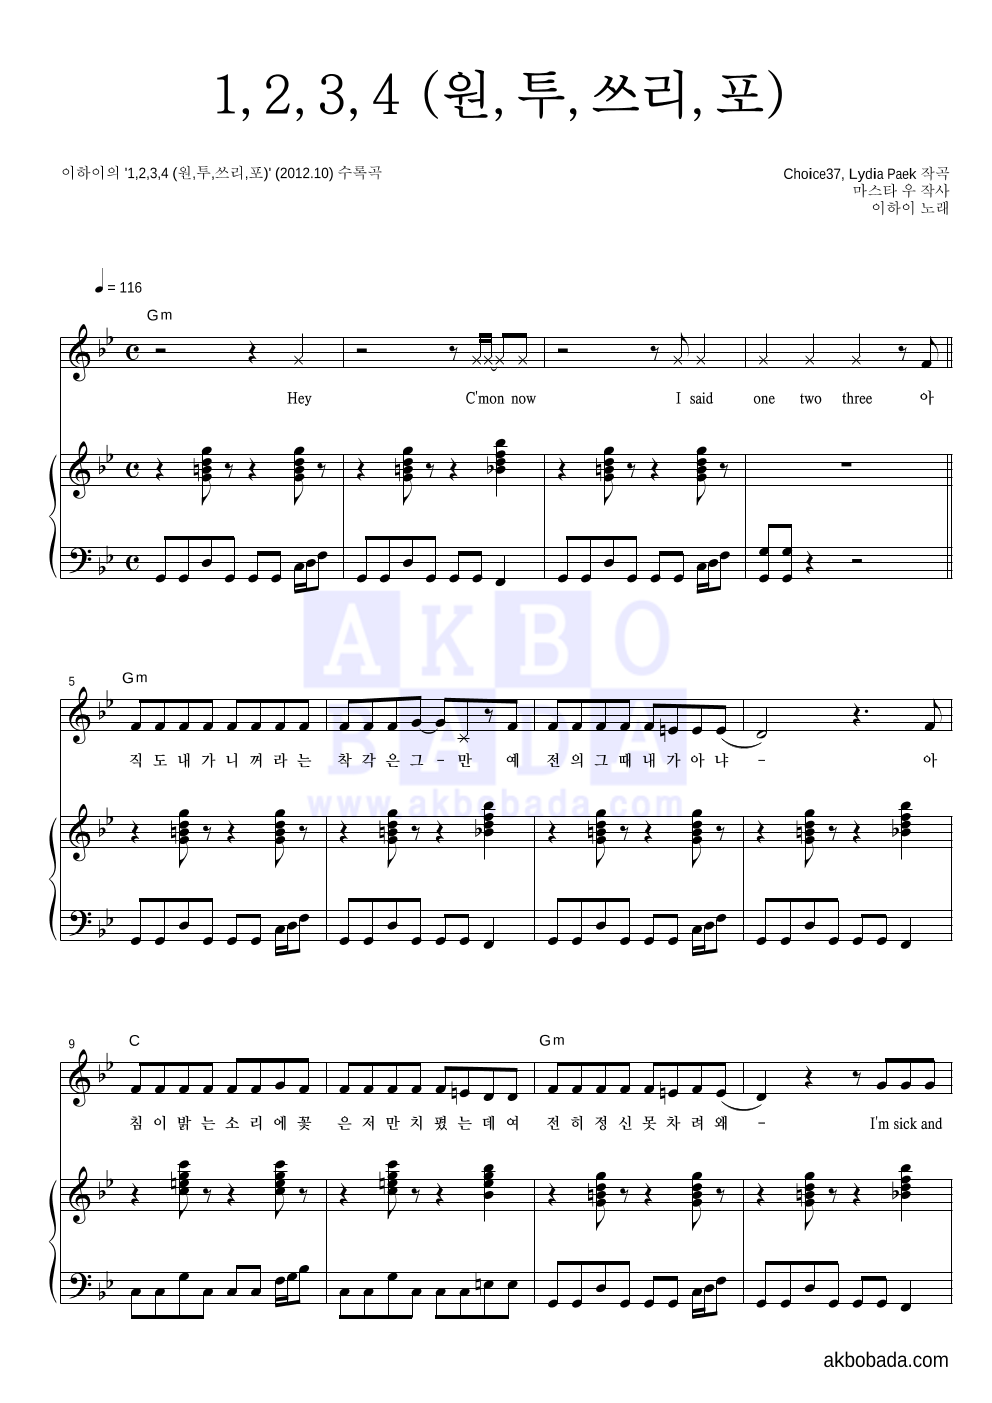 이하이 - 1,2,3,4 (원,투,쓰리,포) 피아노 3단 악보 